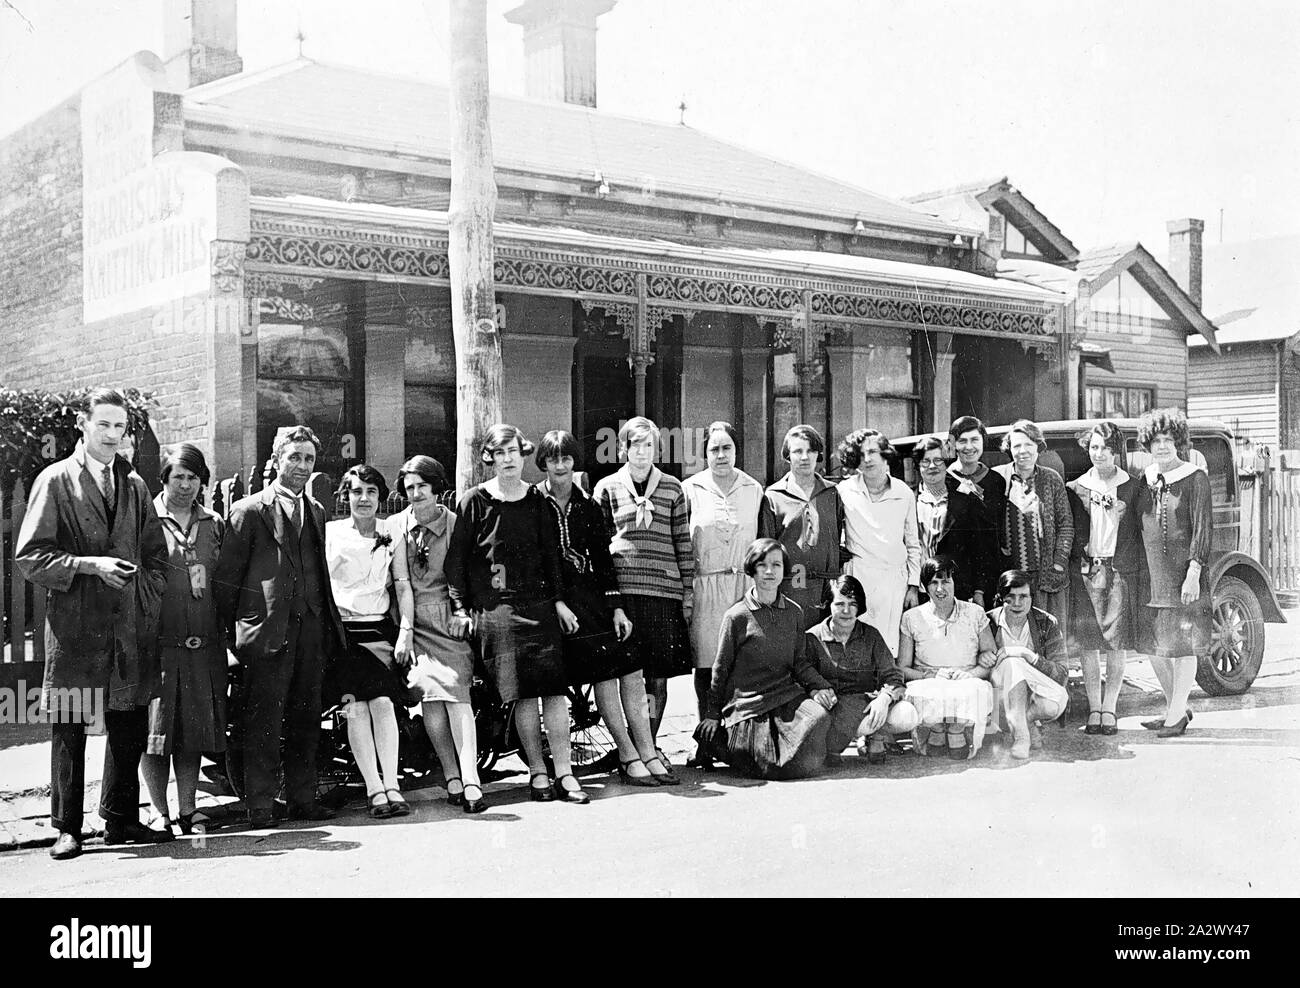 Negative - Melbourne, Victoria, 1922, Mitarbeiter von Harrison's Strickereien in der Straße versammelt. Es ist ein Auto hinter Ihnen, die außerhalb einer Suburban House geparkt ist Stockfoto